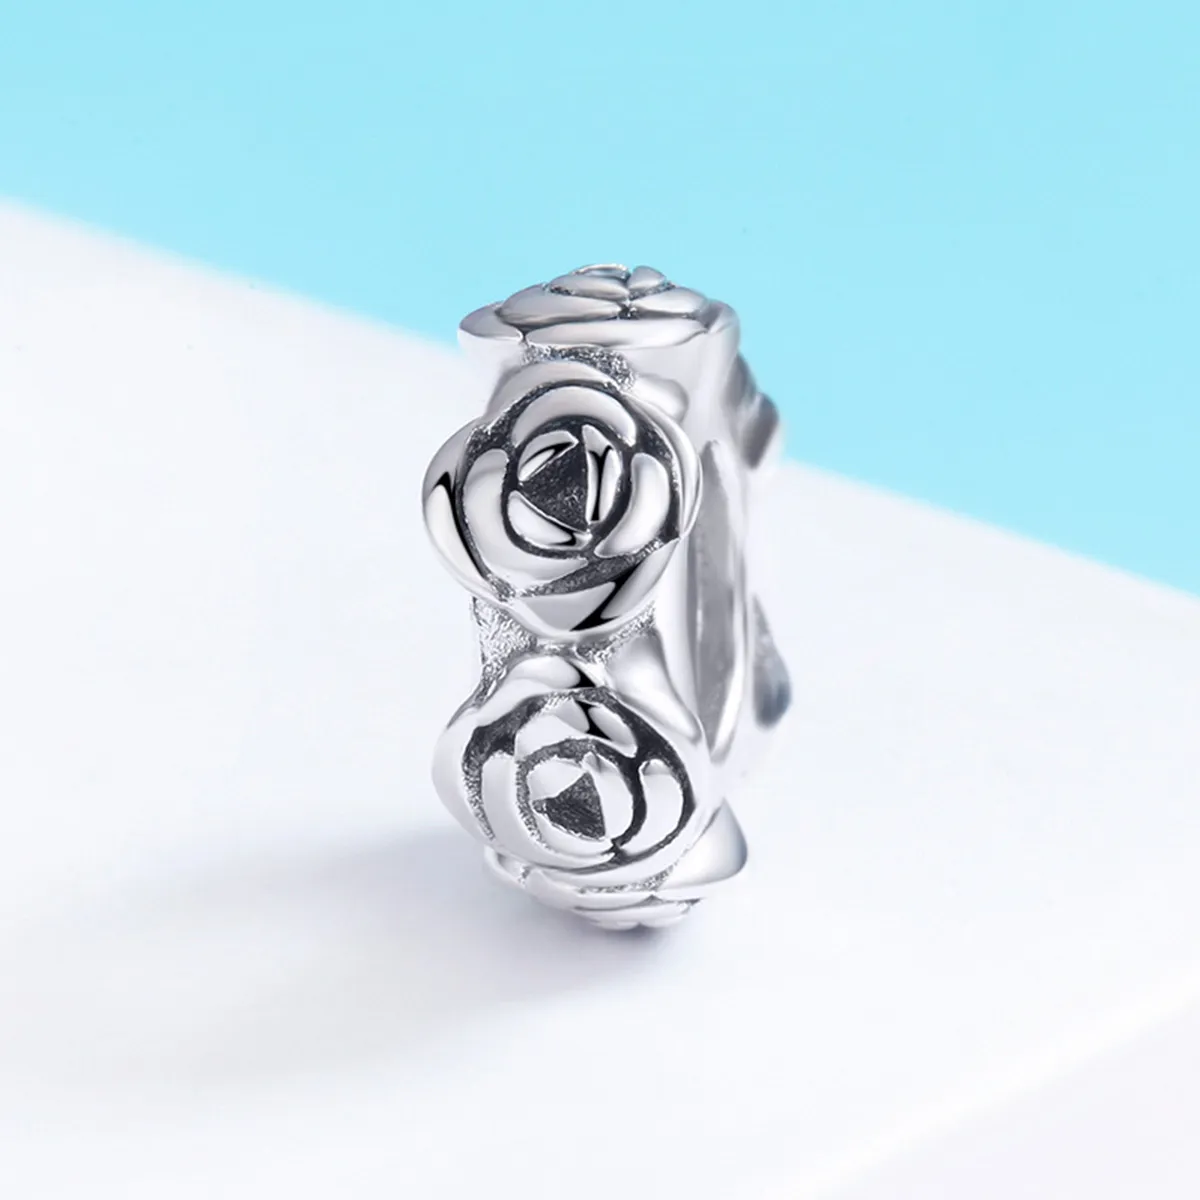 Talisman de tip distanțier Tip Pandora cu Coroană de trandafiri din argint - SCC596